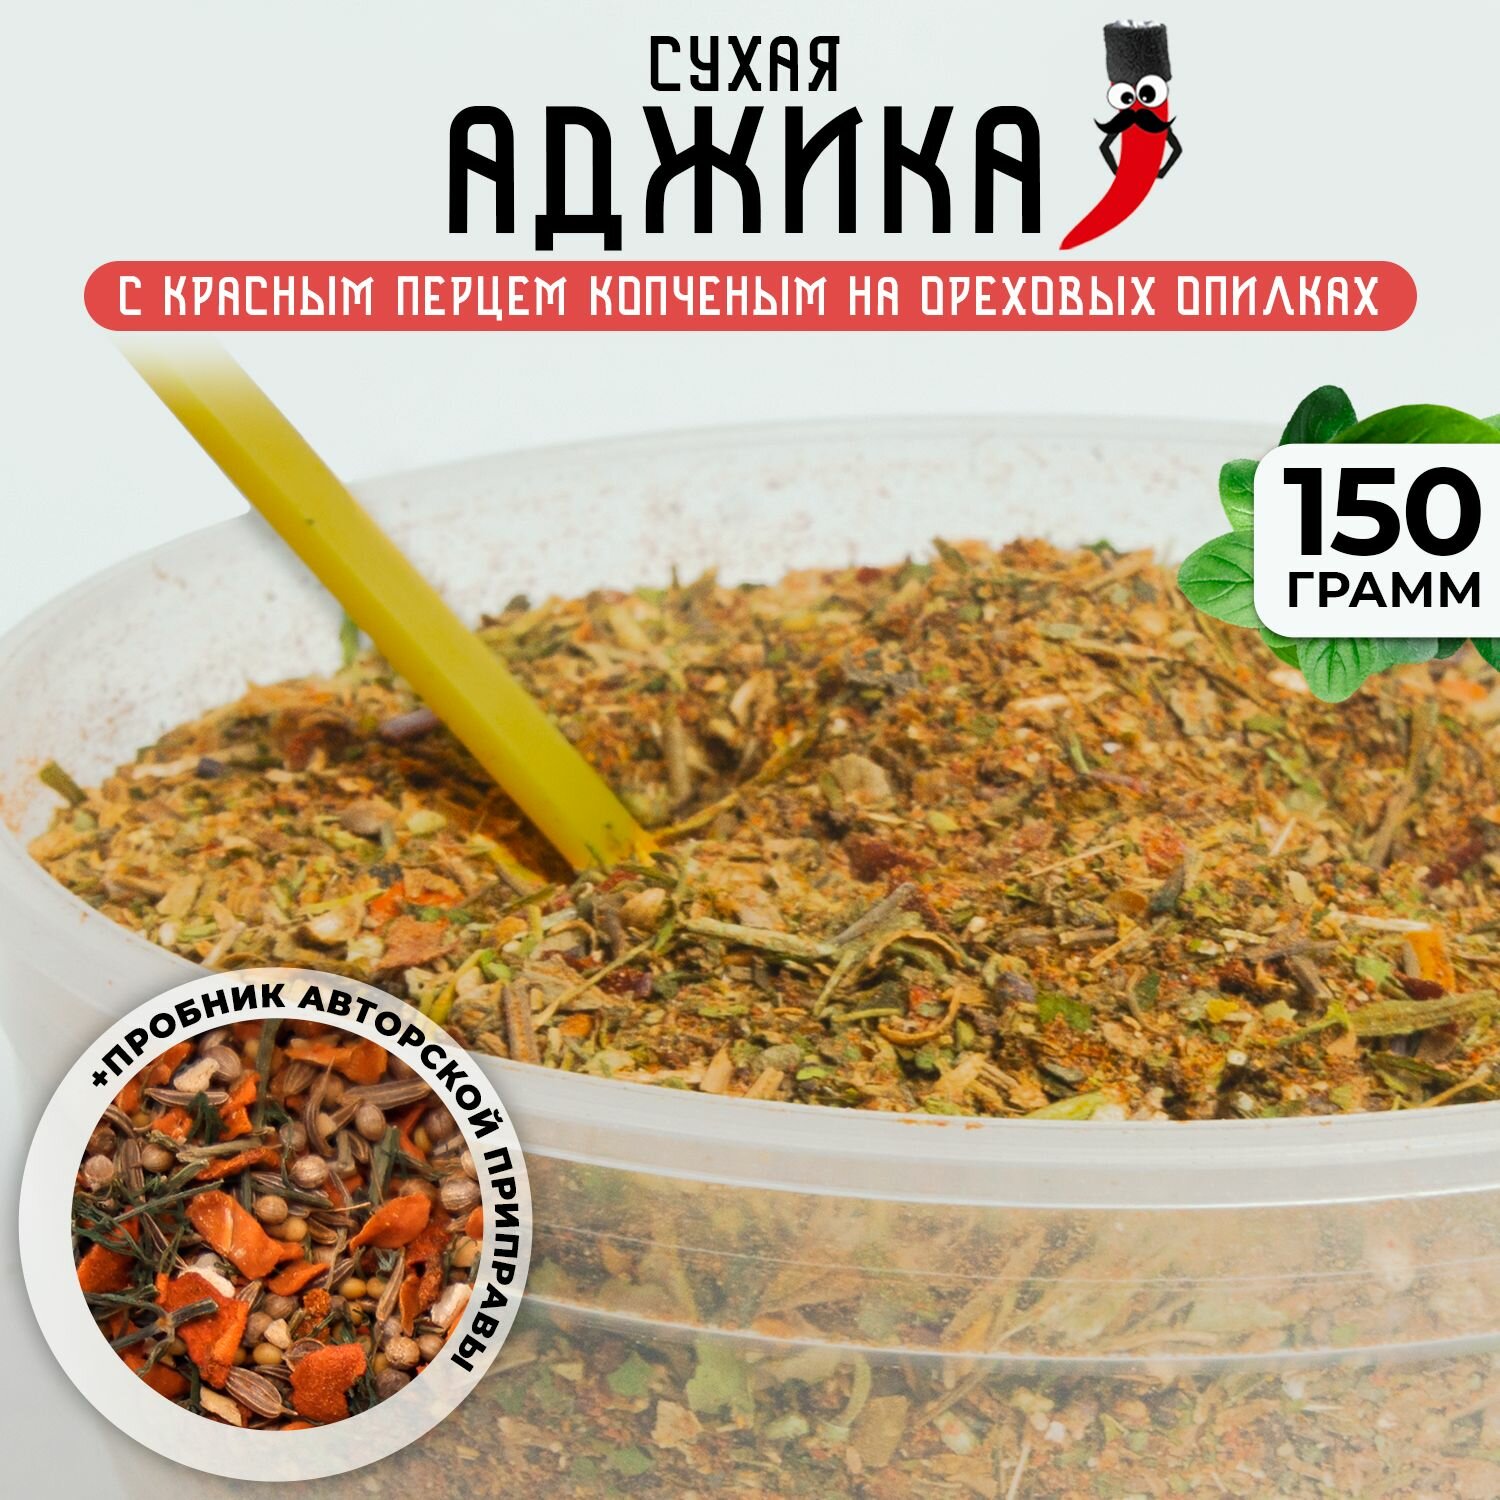 Сухая красная аджика по-кавказски (острая), 150гр